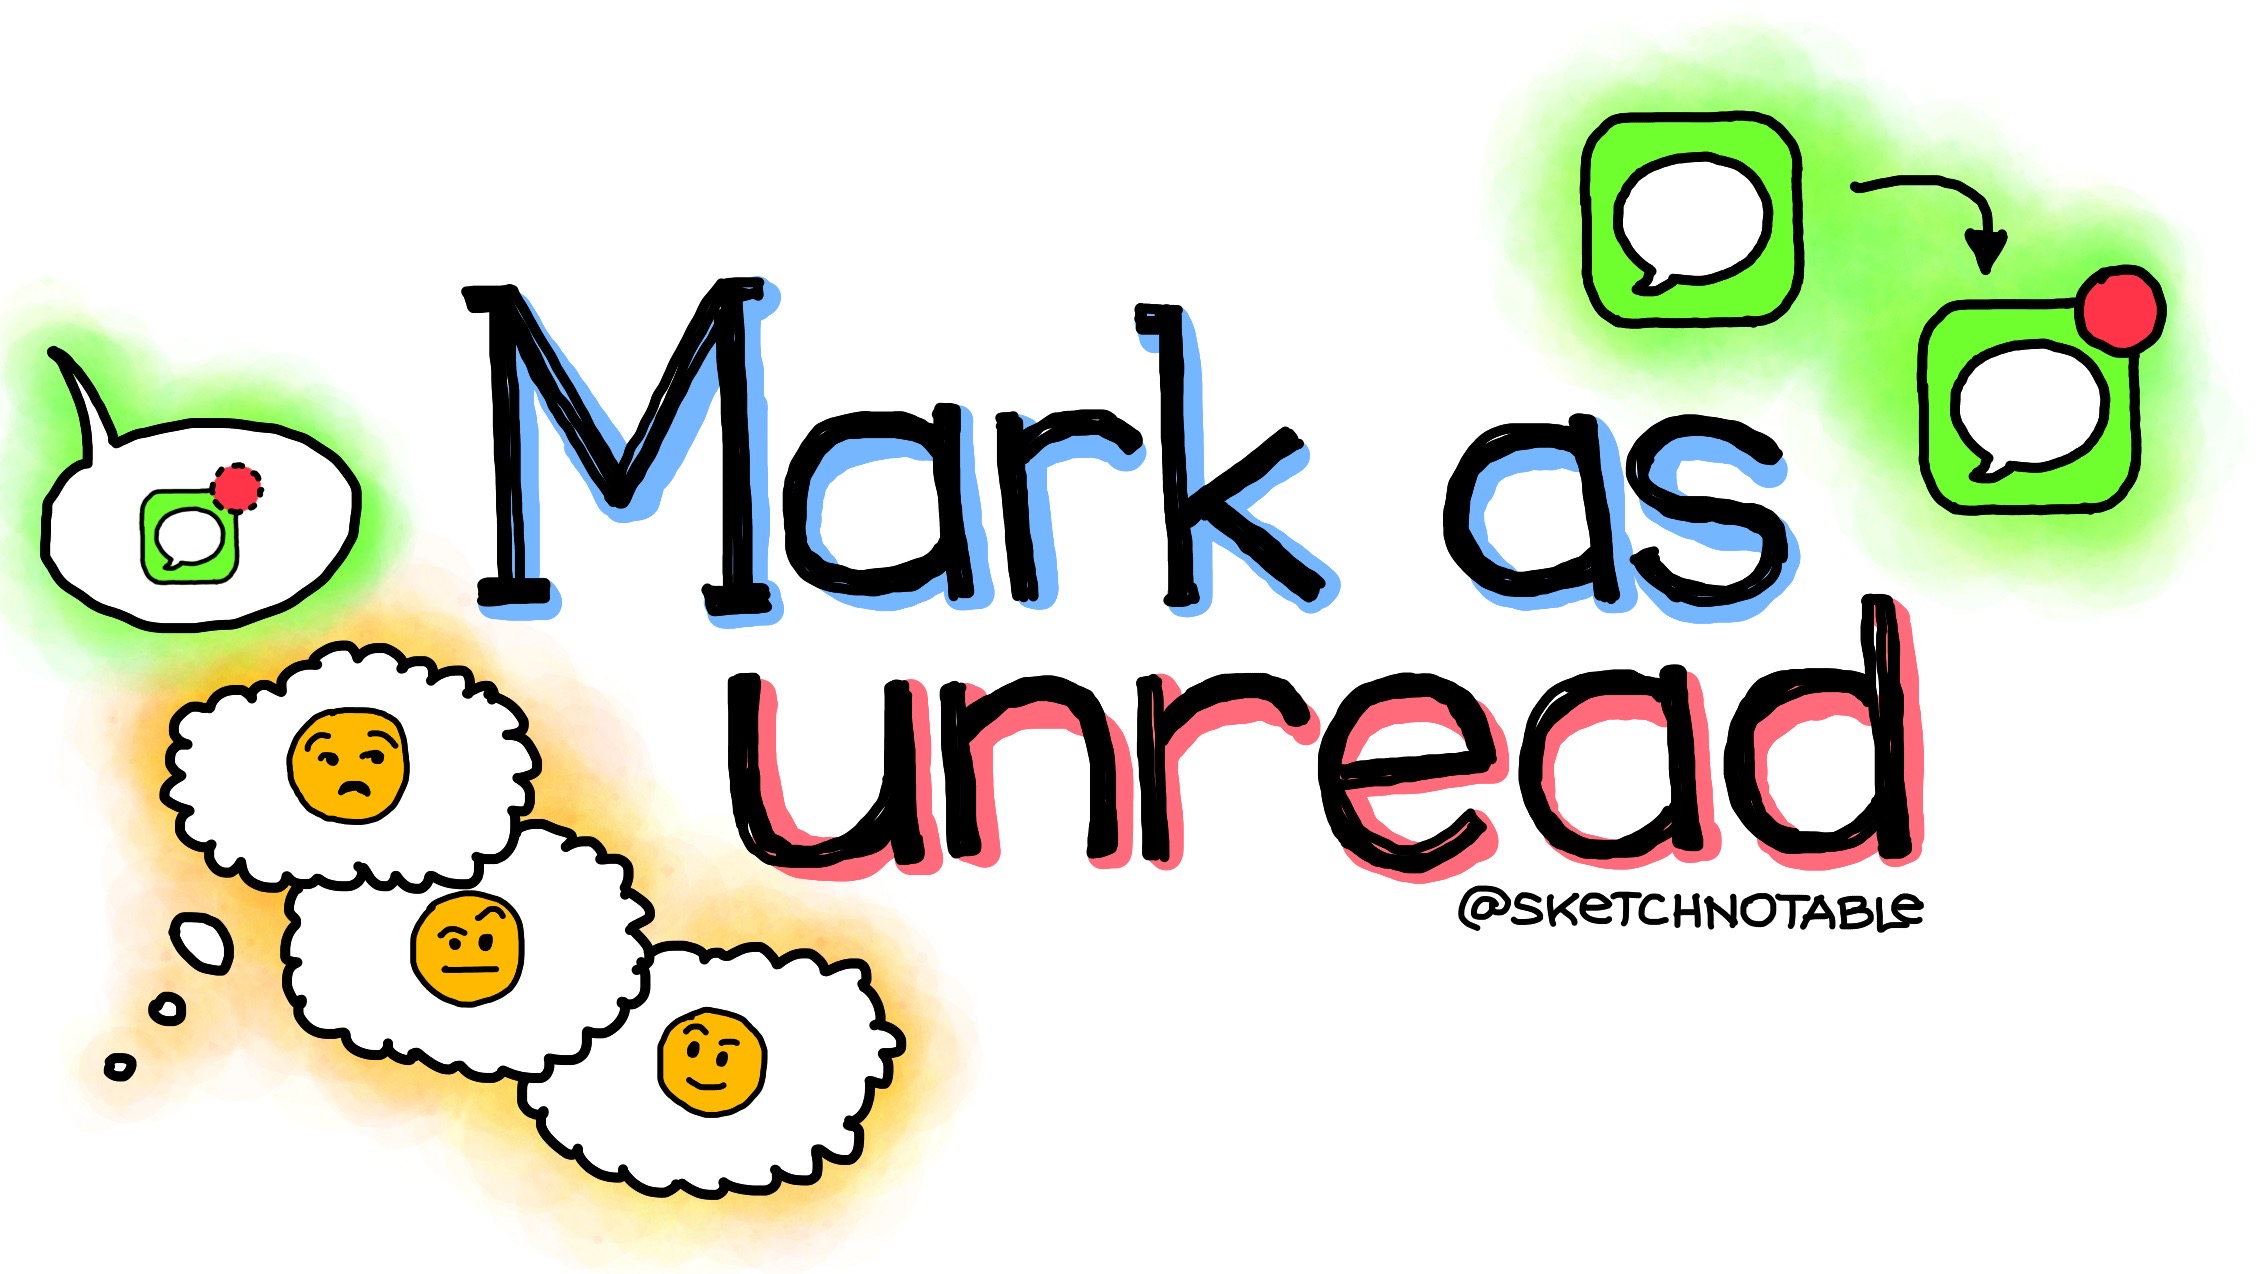 Mark as unread